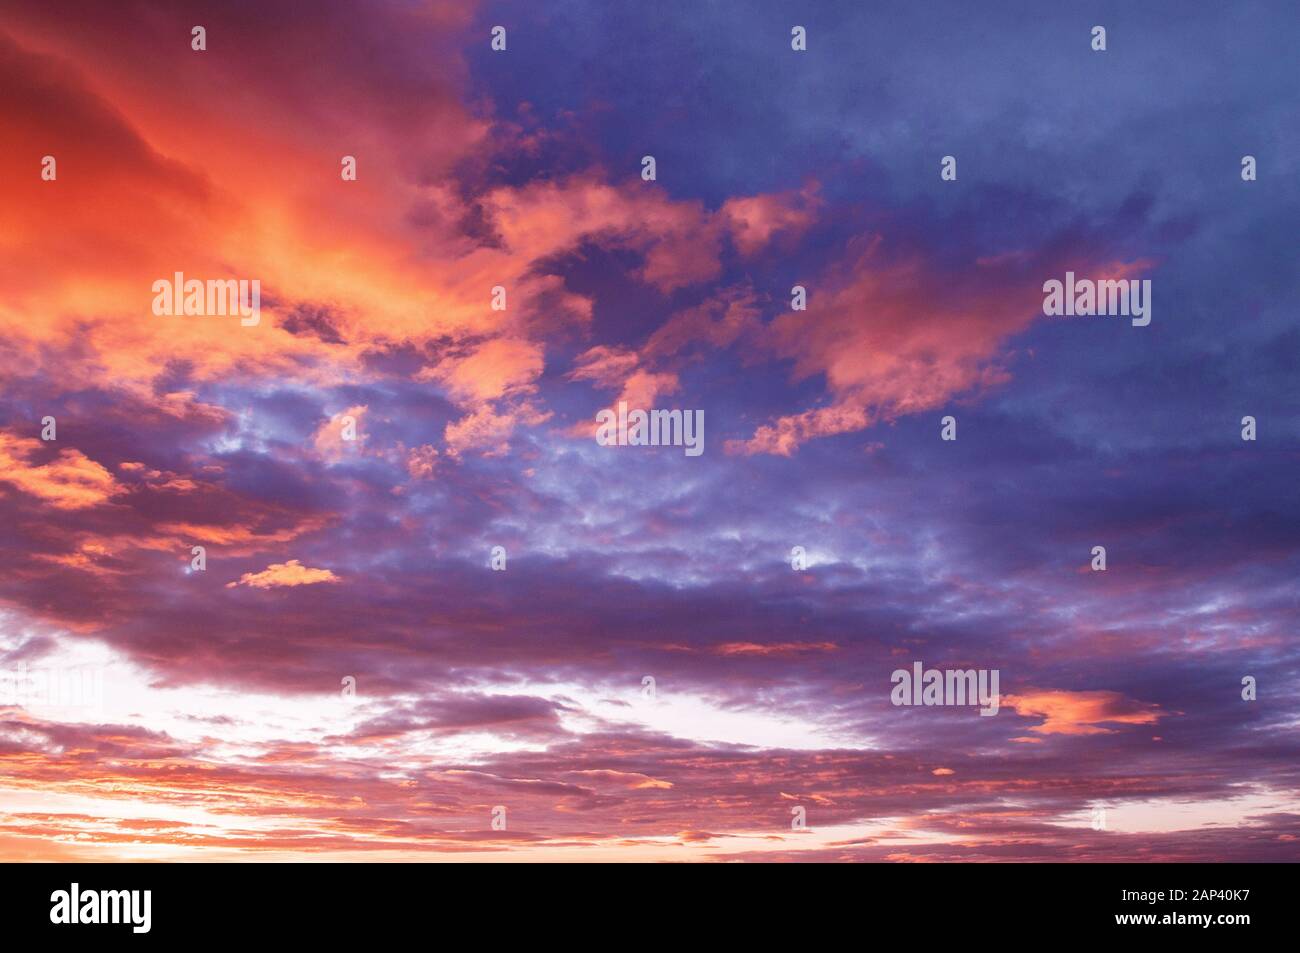 Bella estate due toni rosso acceso tramonto o alba cielo con nuvole sparse Foto Stock